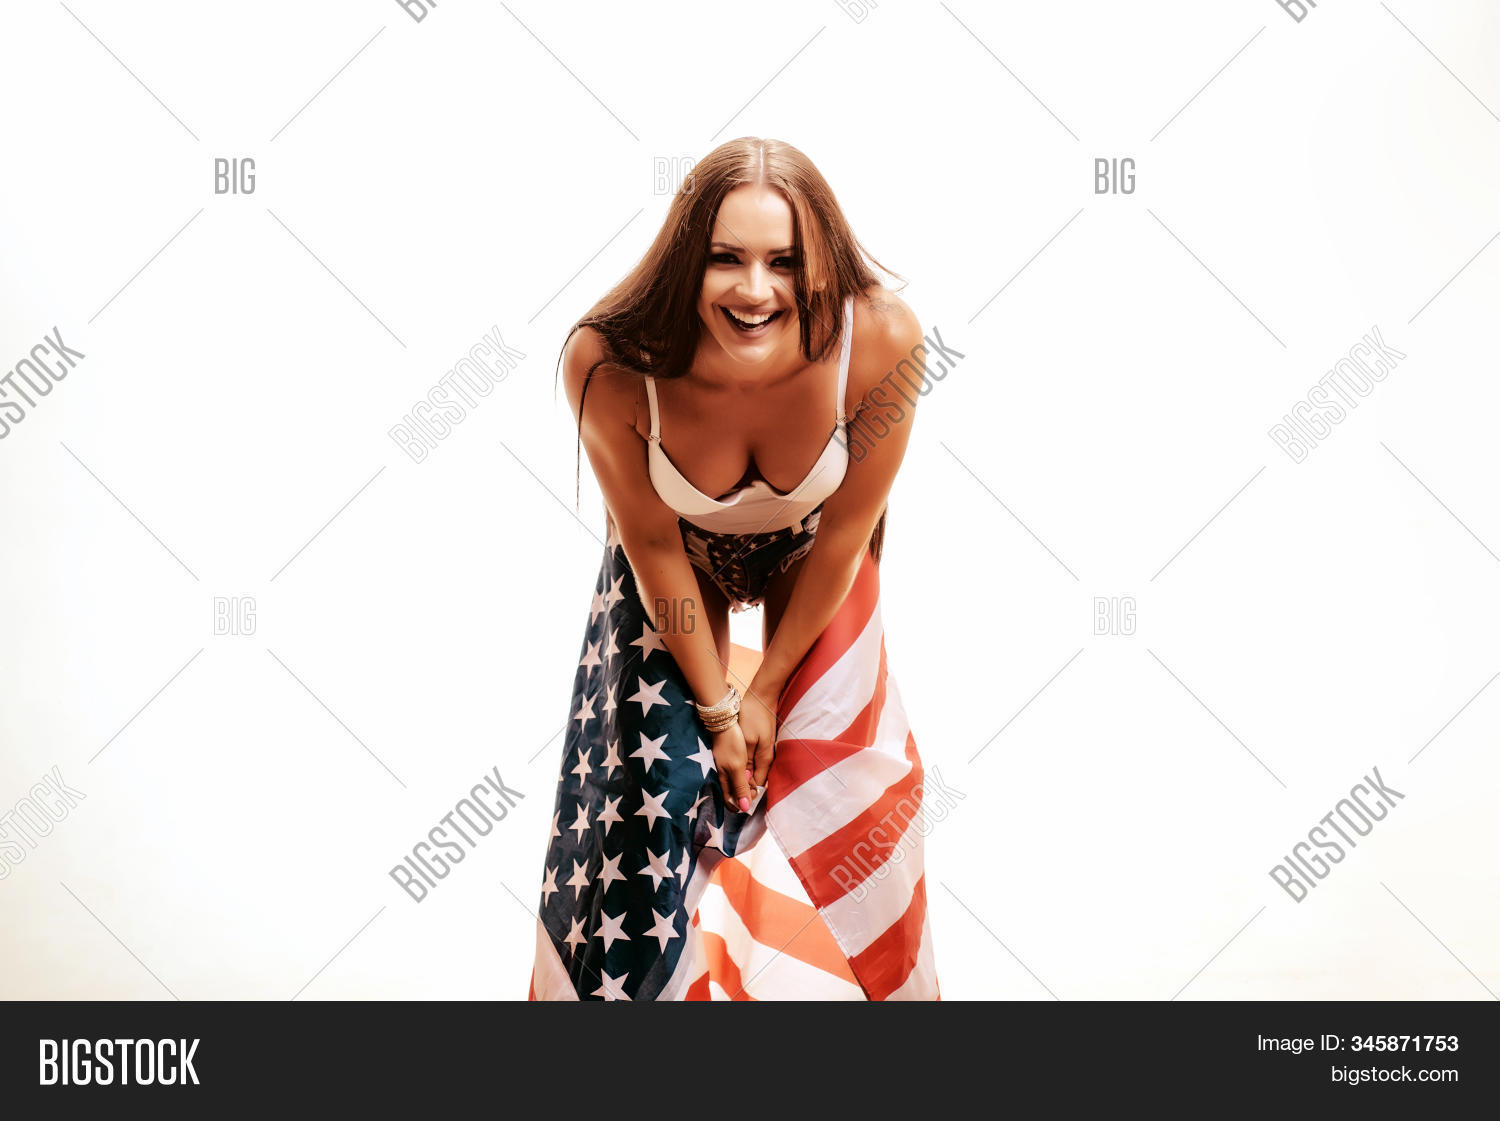 Hot Girl Holding American Flag xhamster teen